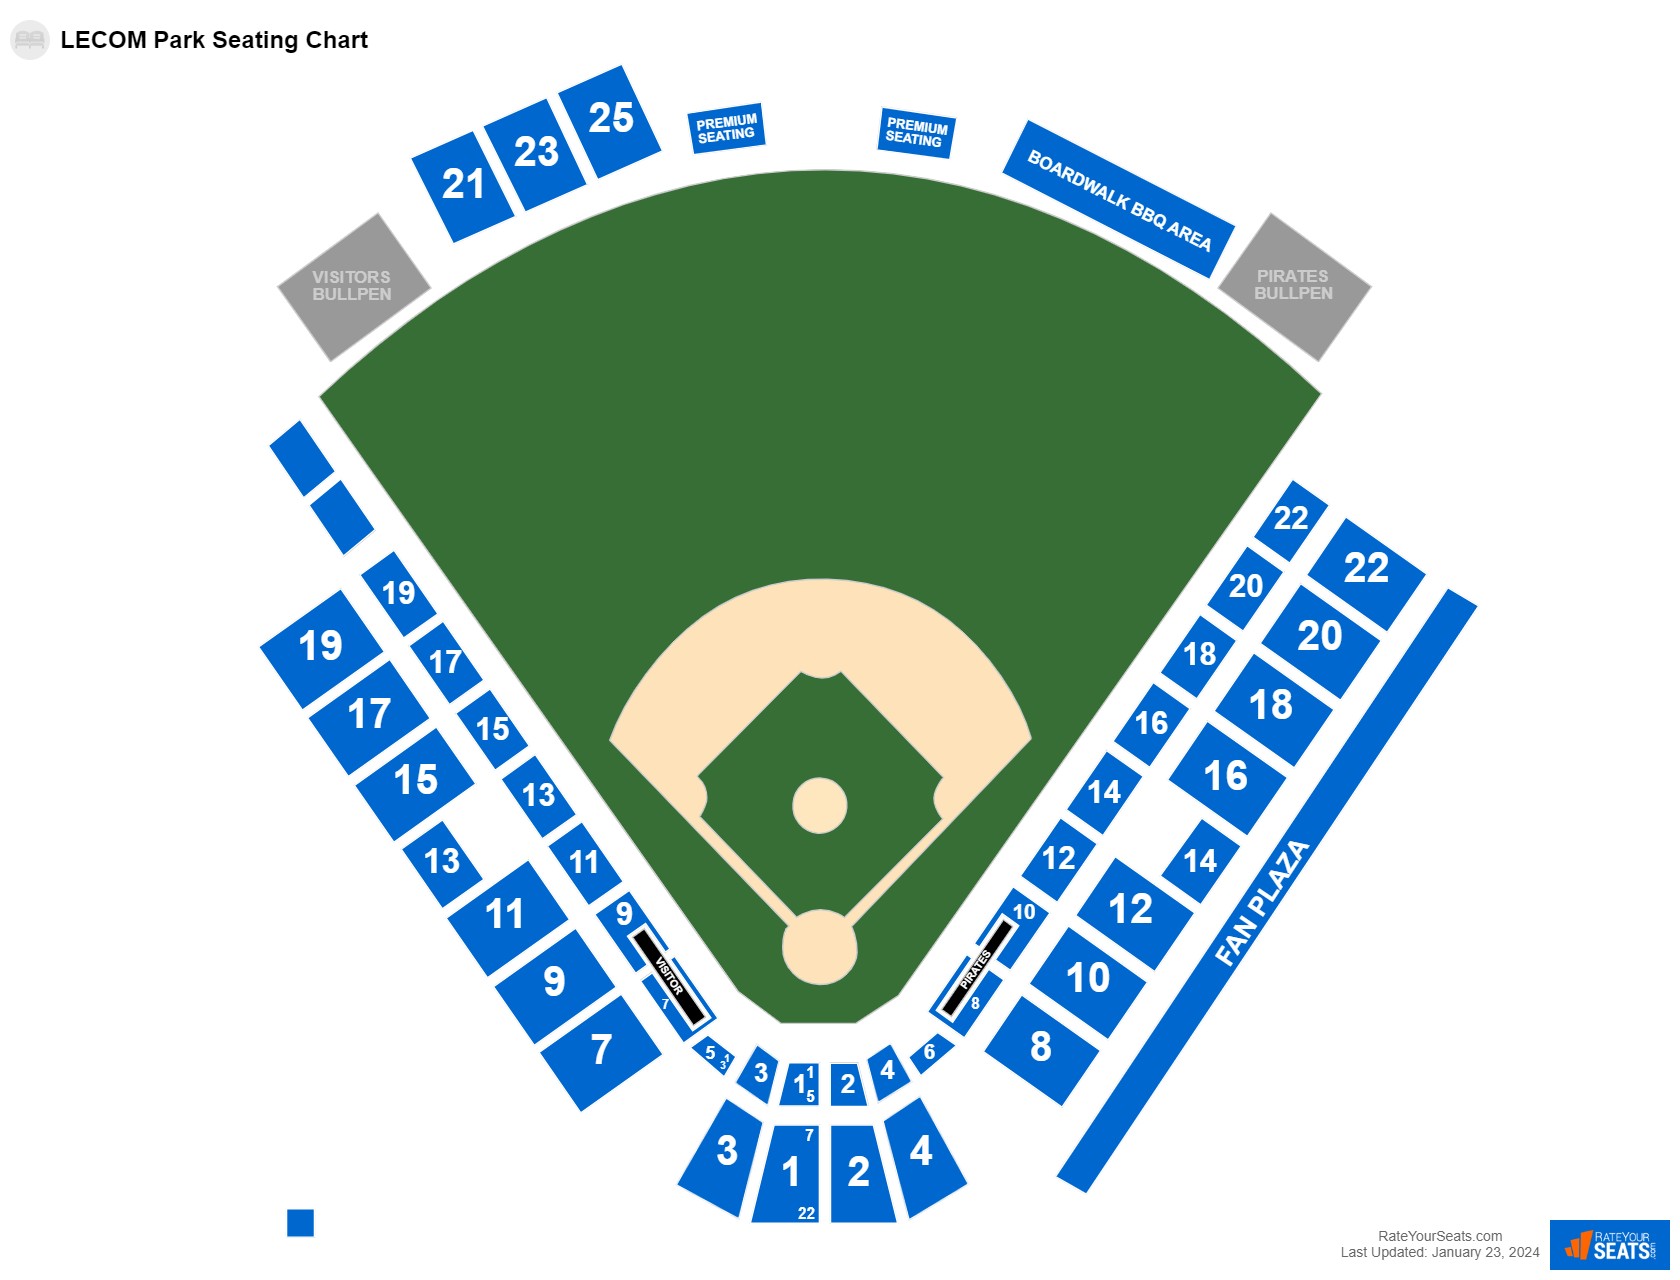 Baseball seating chart at LECOM Park